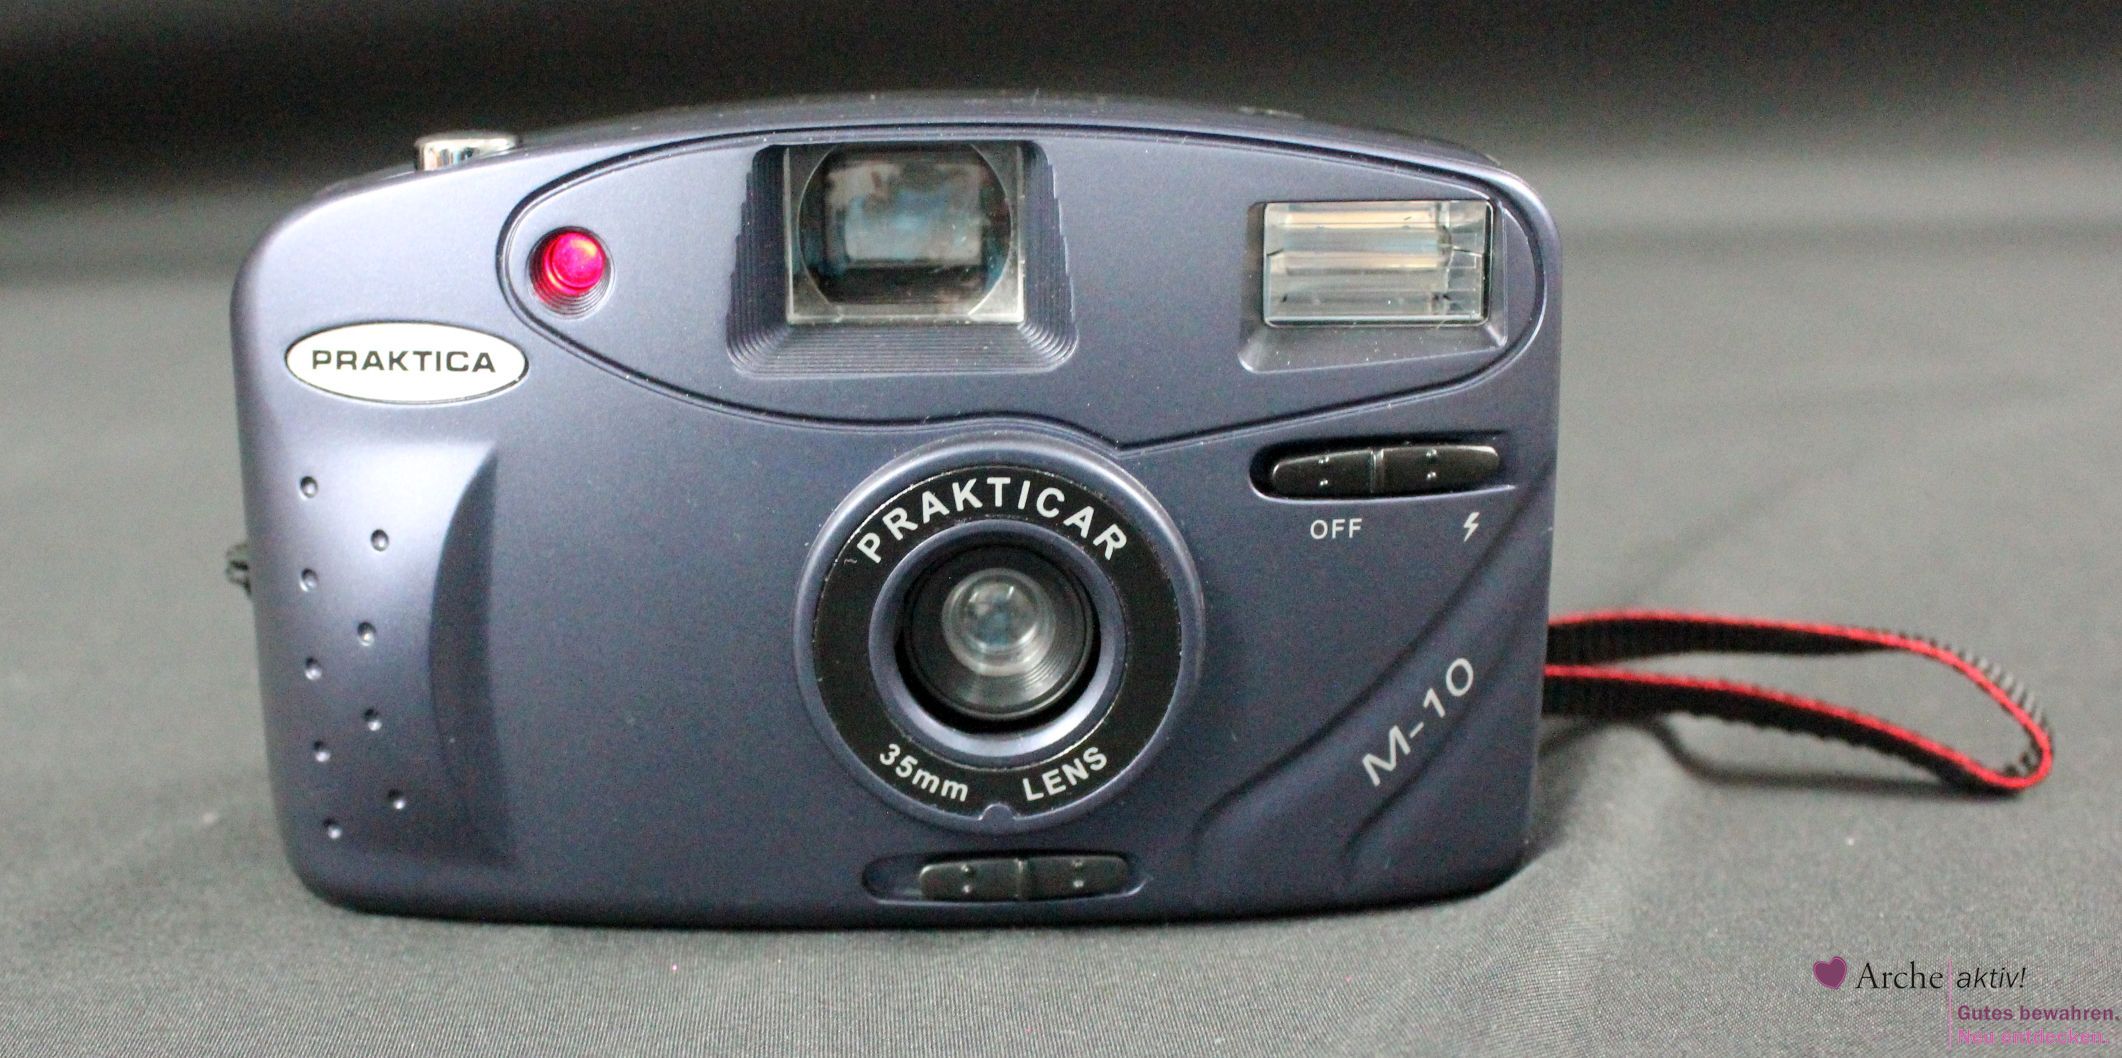 Praktica M-10, Prakticar 35mm Lens, analoge Kamera, gebraucht